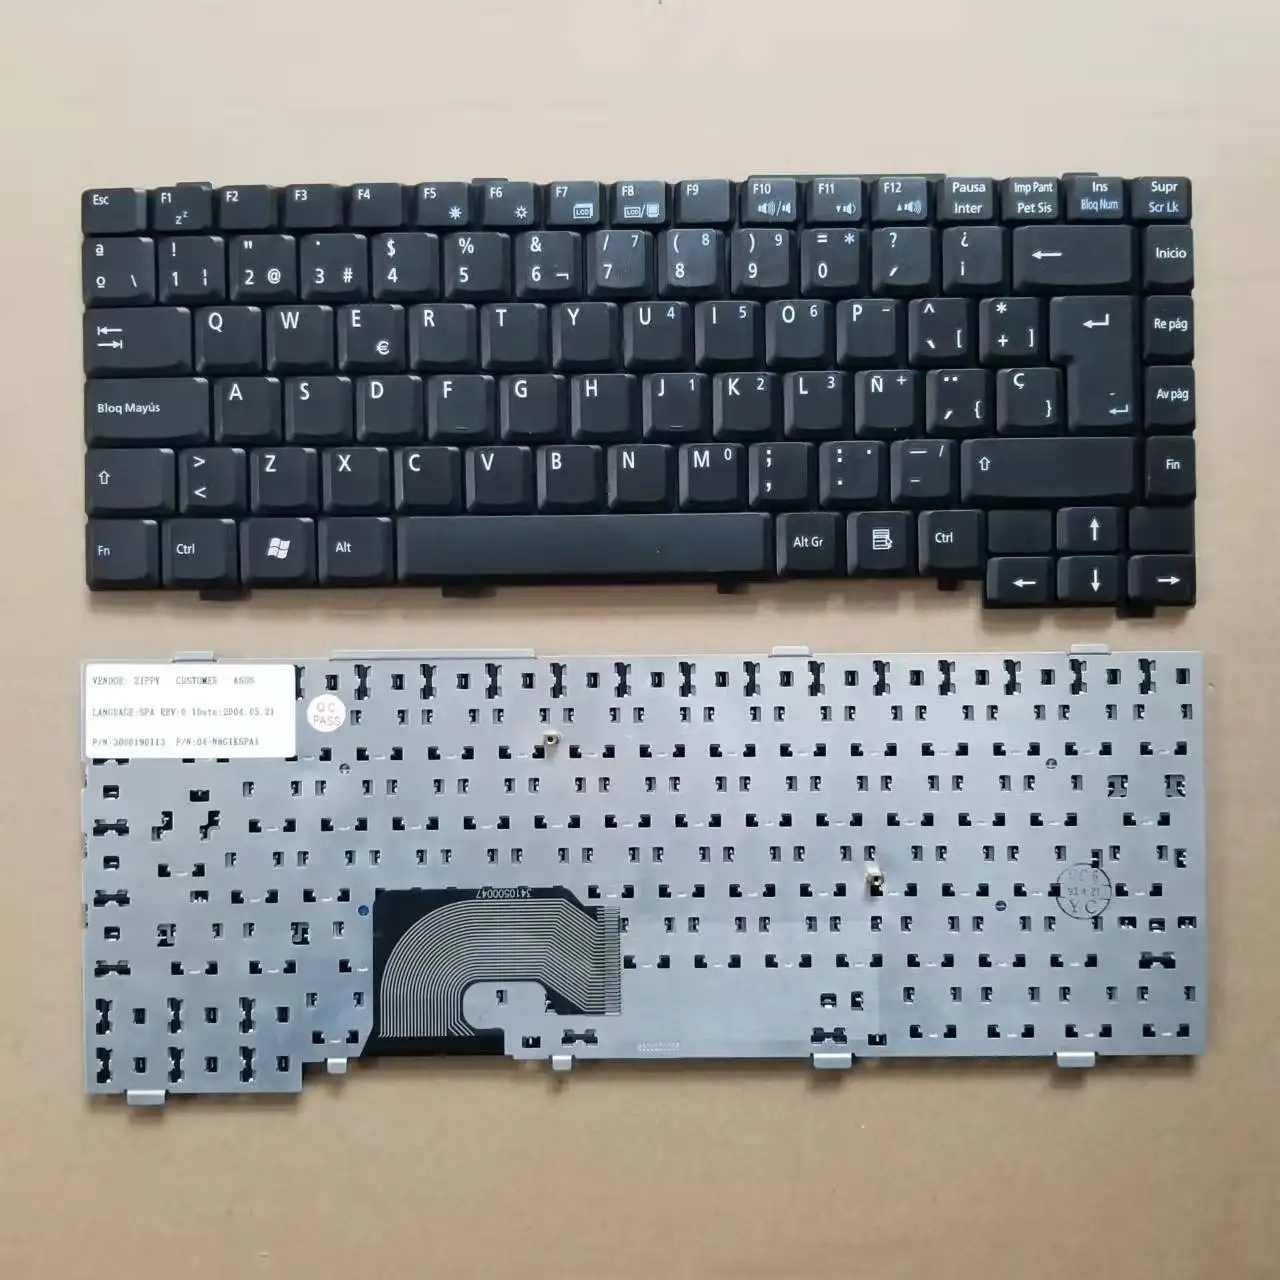 

Новая черная клавиатура для ноутбука Asus L4000 Z9000 серии SP с испанской раскладкой